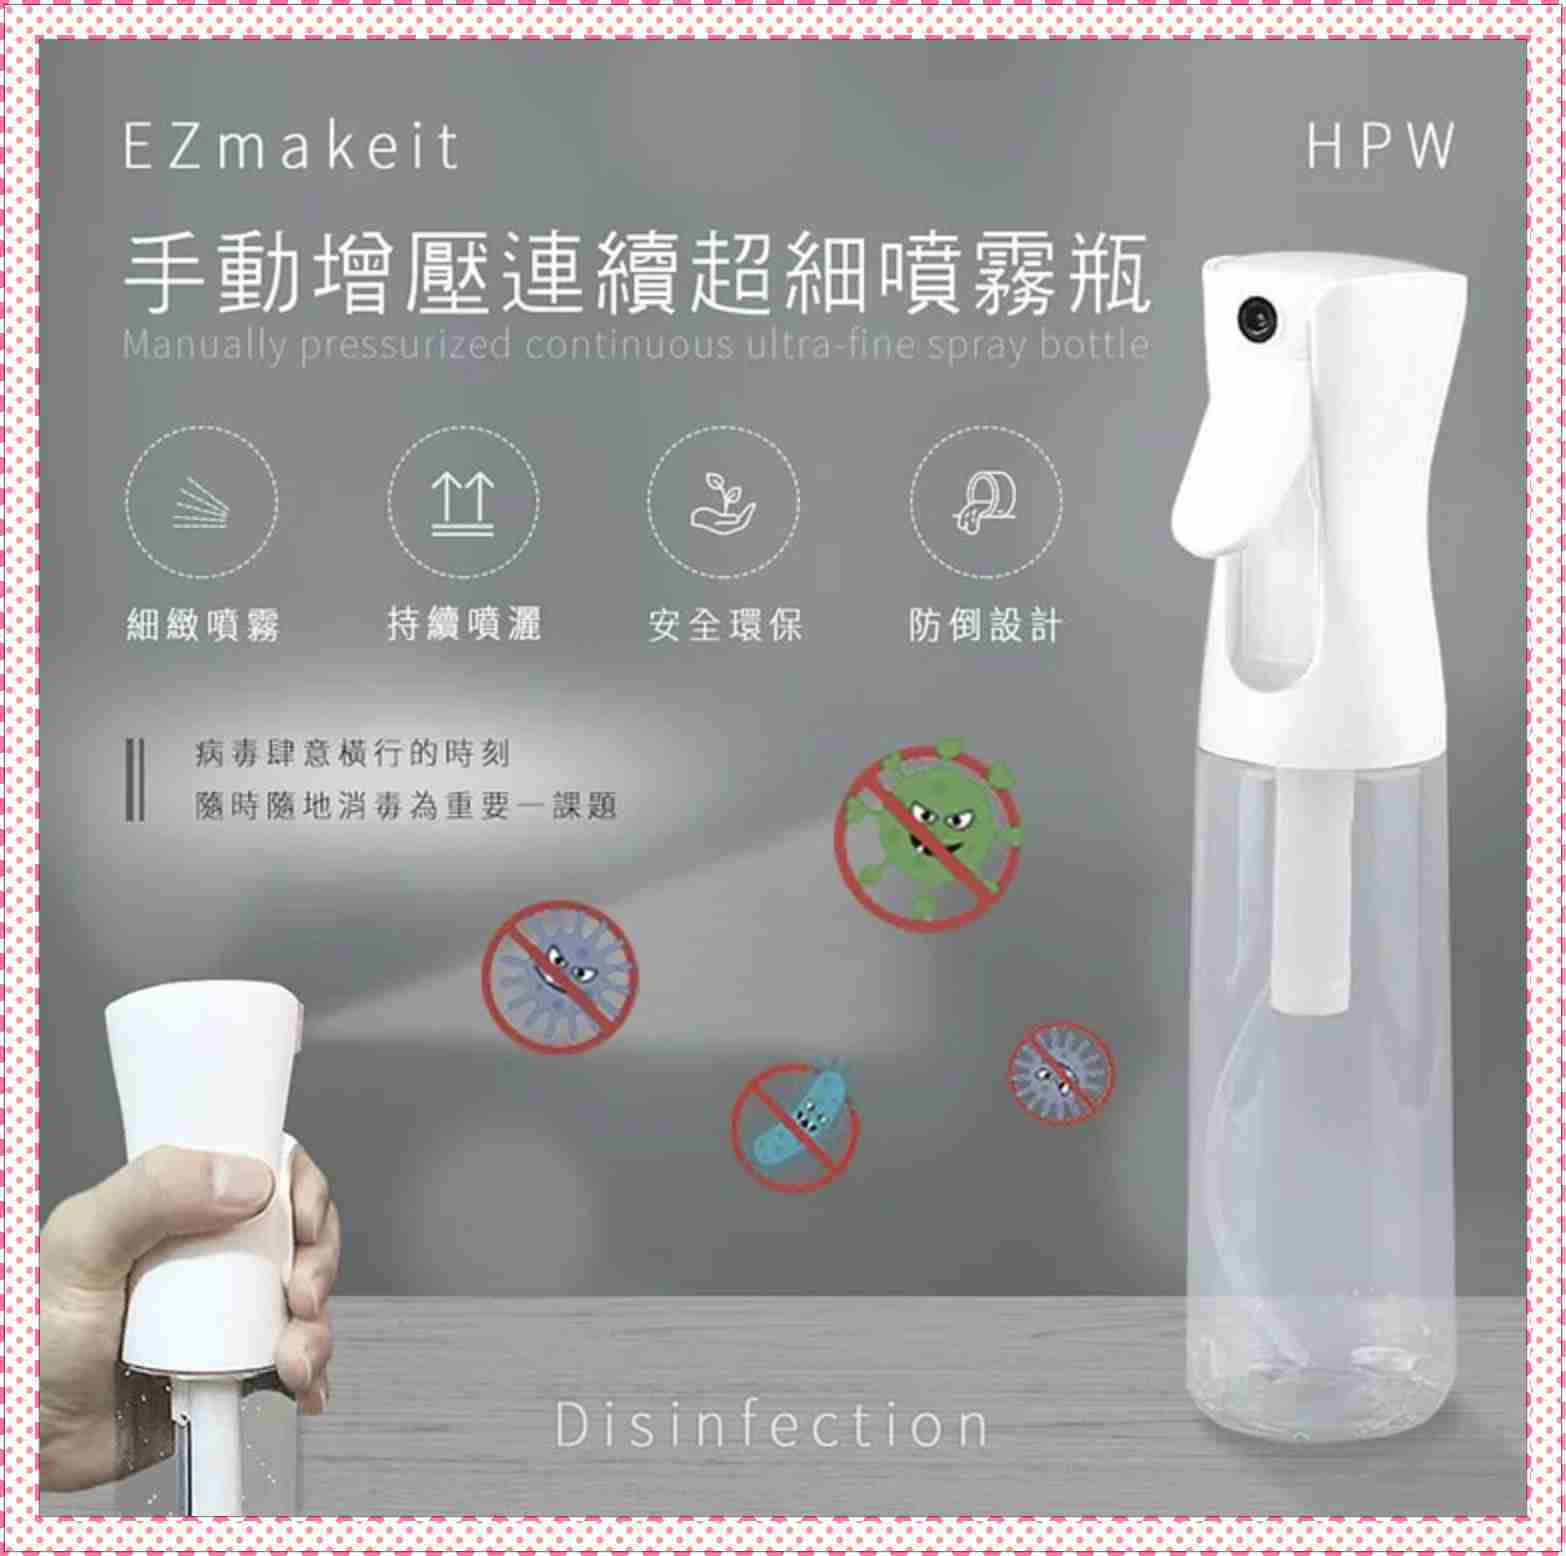 消毒水分裝瓶 EZmakeit-HPW